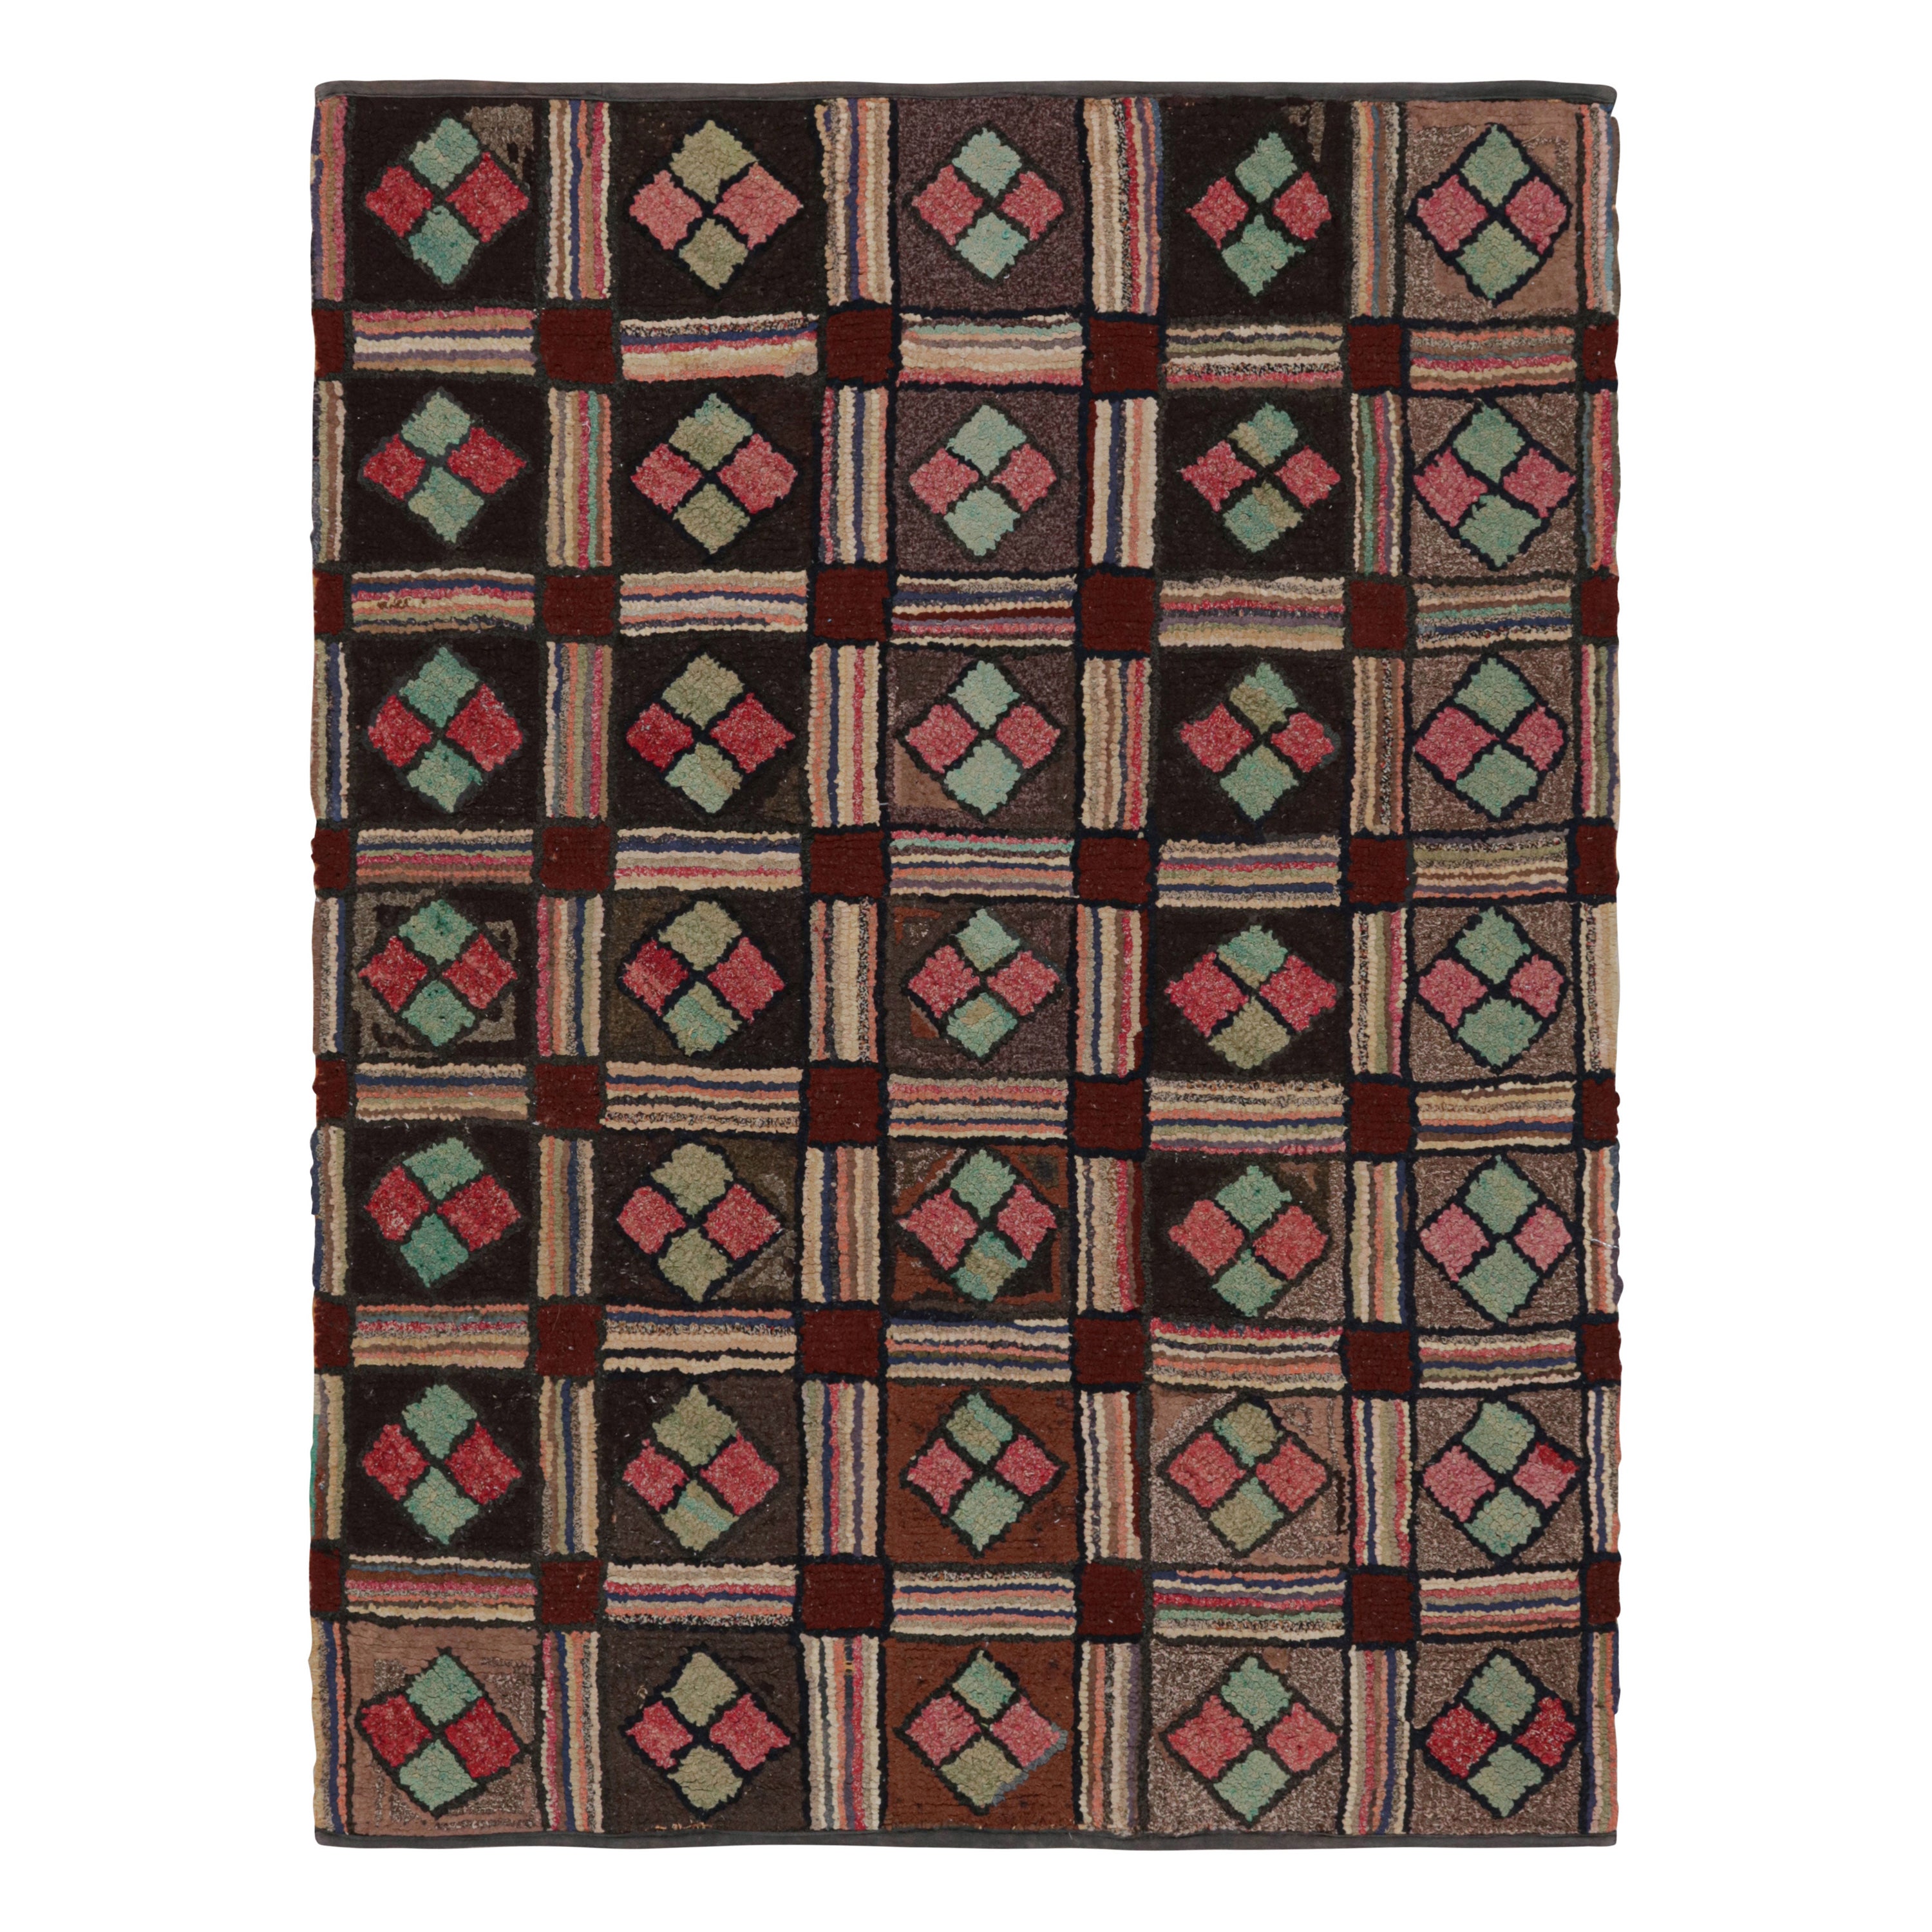 Tapis crocheté antique à motifs géométriques bruns, rouges et bleus, de Rug & Kilim